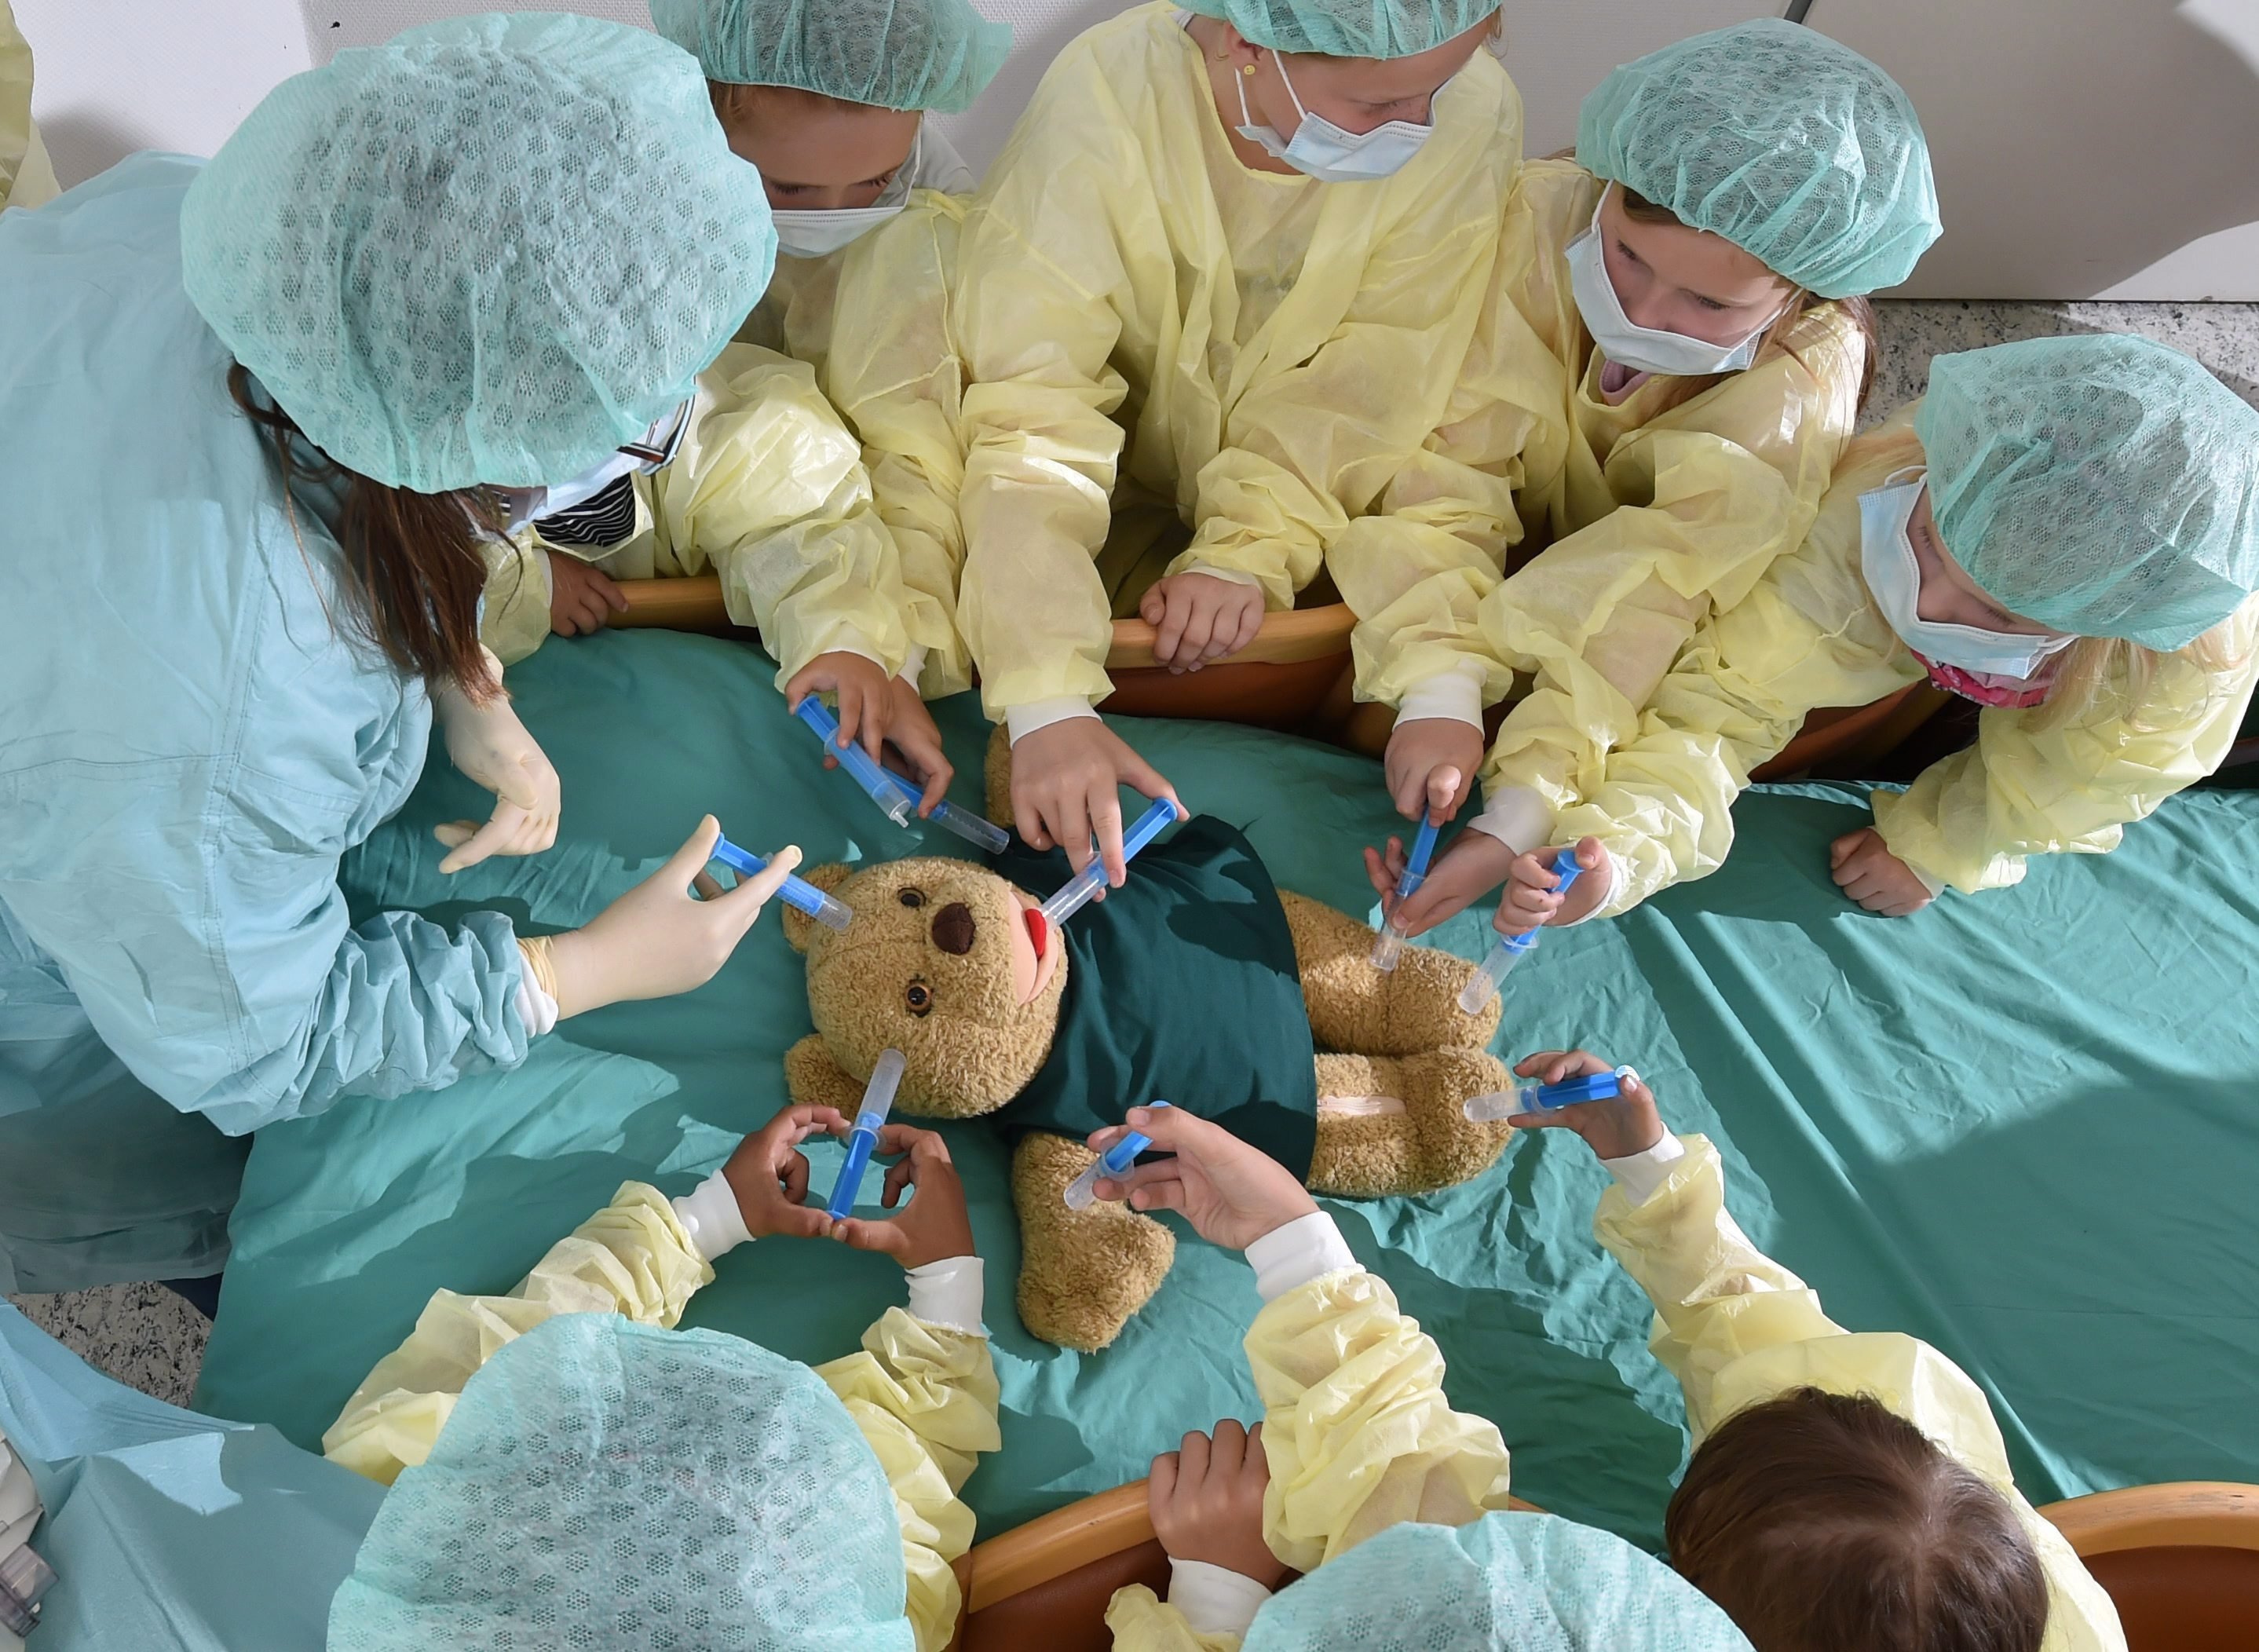 Kislányok egy plüssállat orvosi ellátását mímelik egy orvostanhallgató (balra) vezetésével a közép-németországi Halle (Saale) egyetemi kórházában 2016. május 23-án.